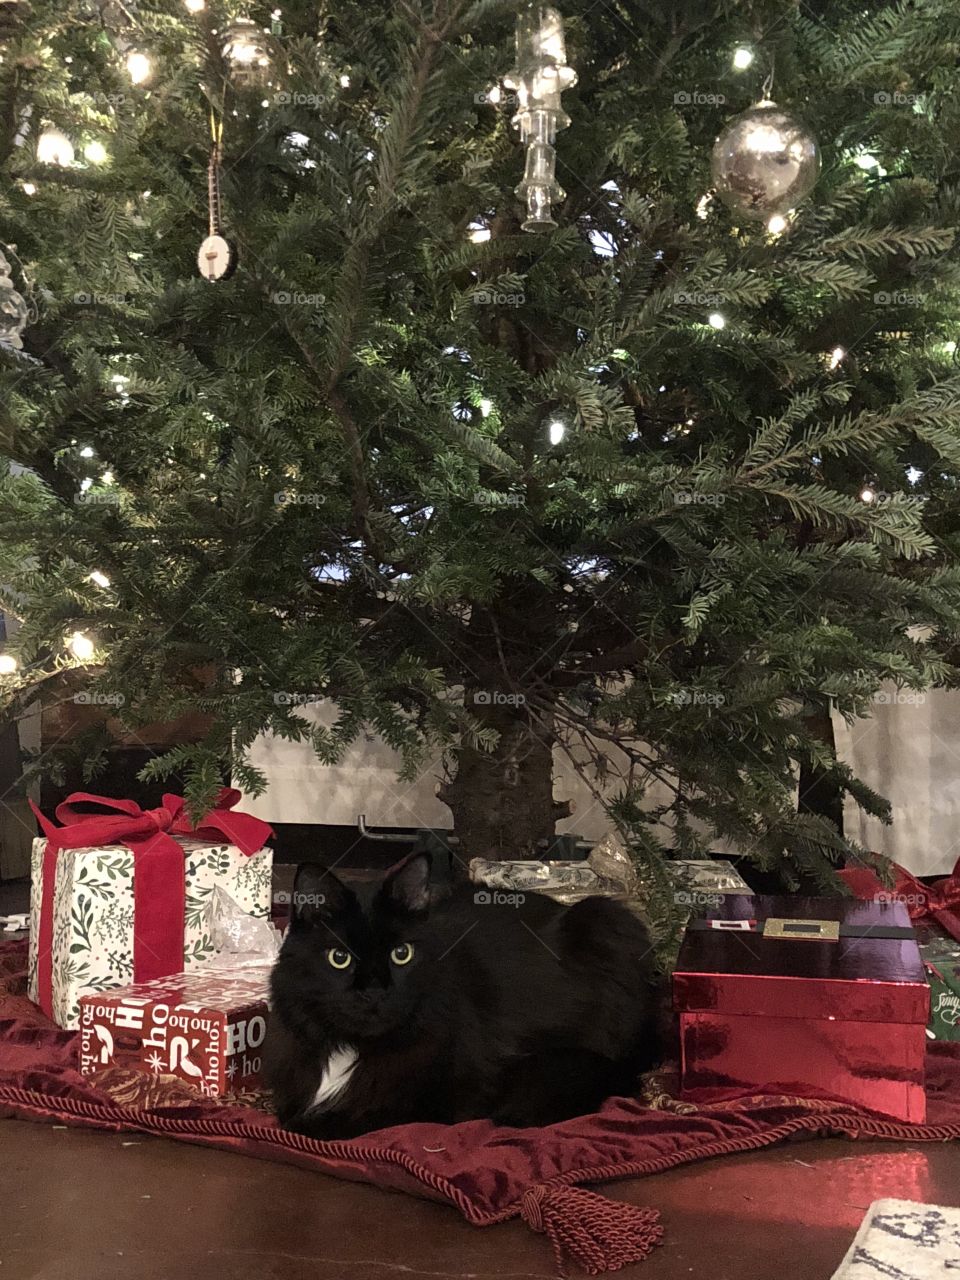 Christmas Kitty